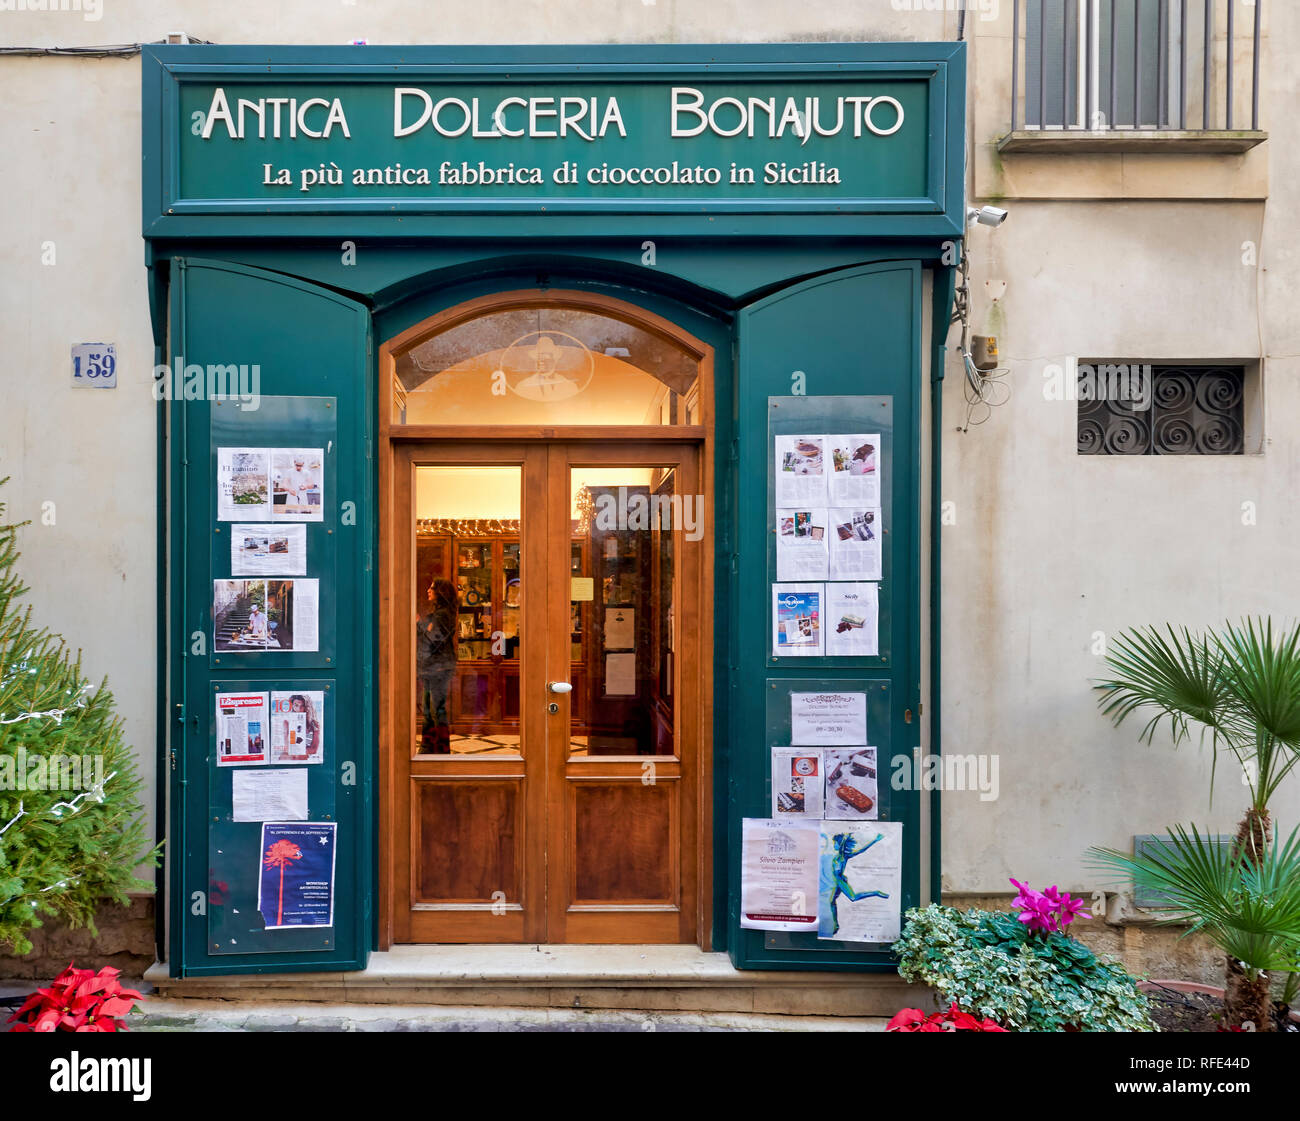 Antica Dolceria Bonajuto il più antico negozio di cioccolato in Sicilia. Modica Italia Foto Stock